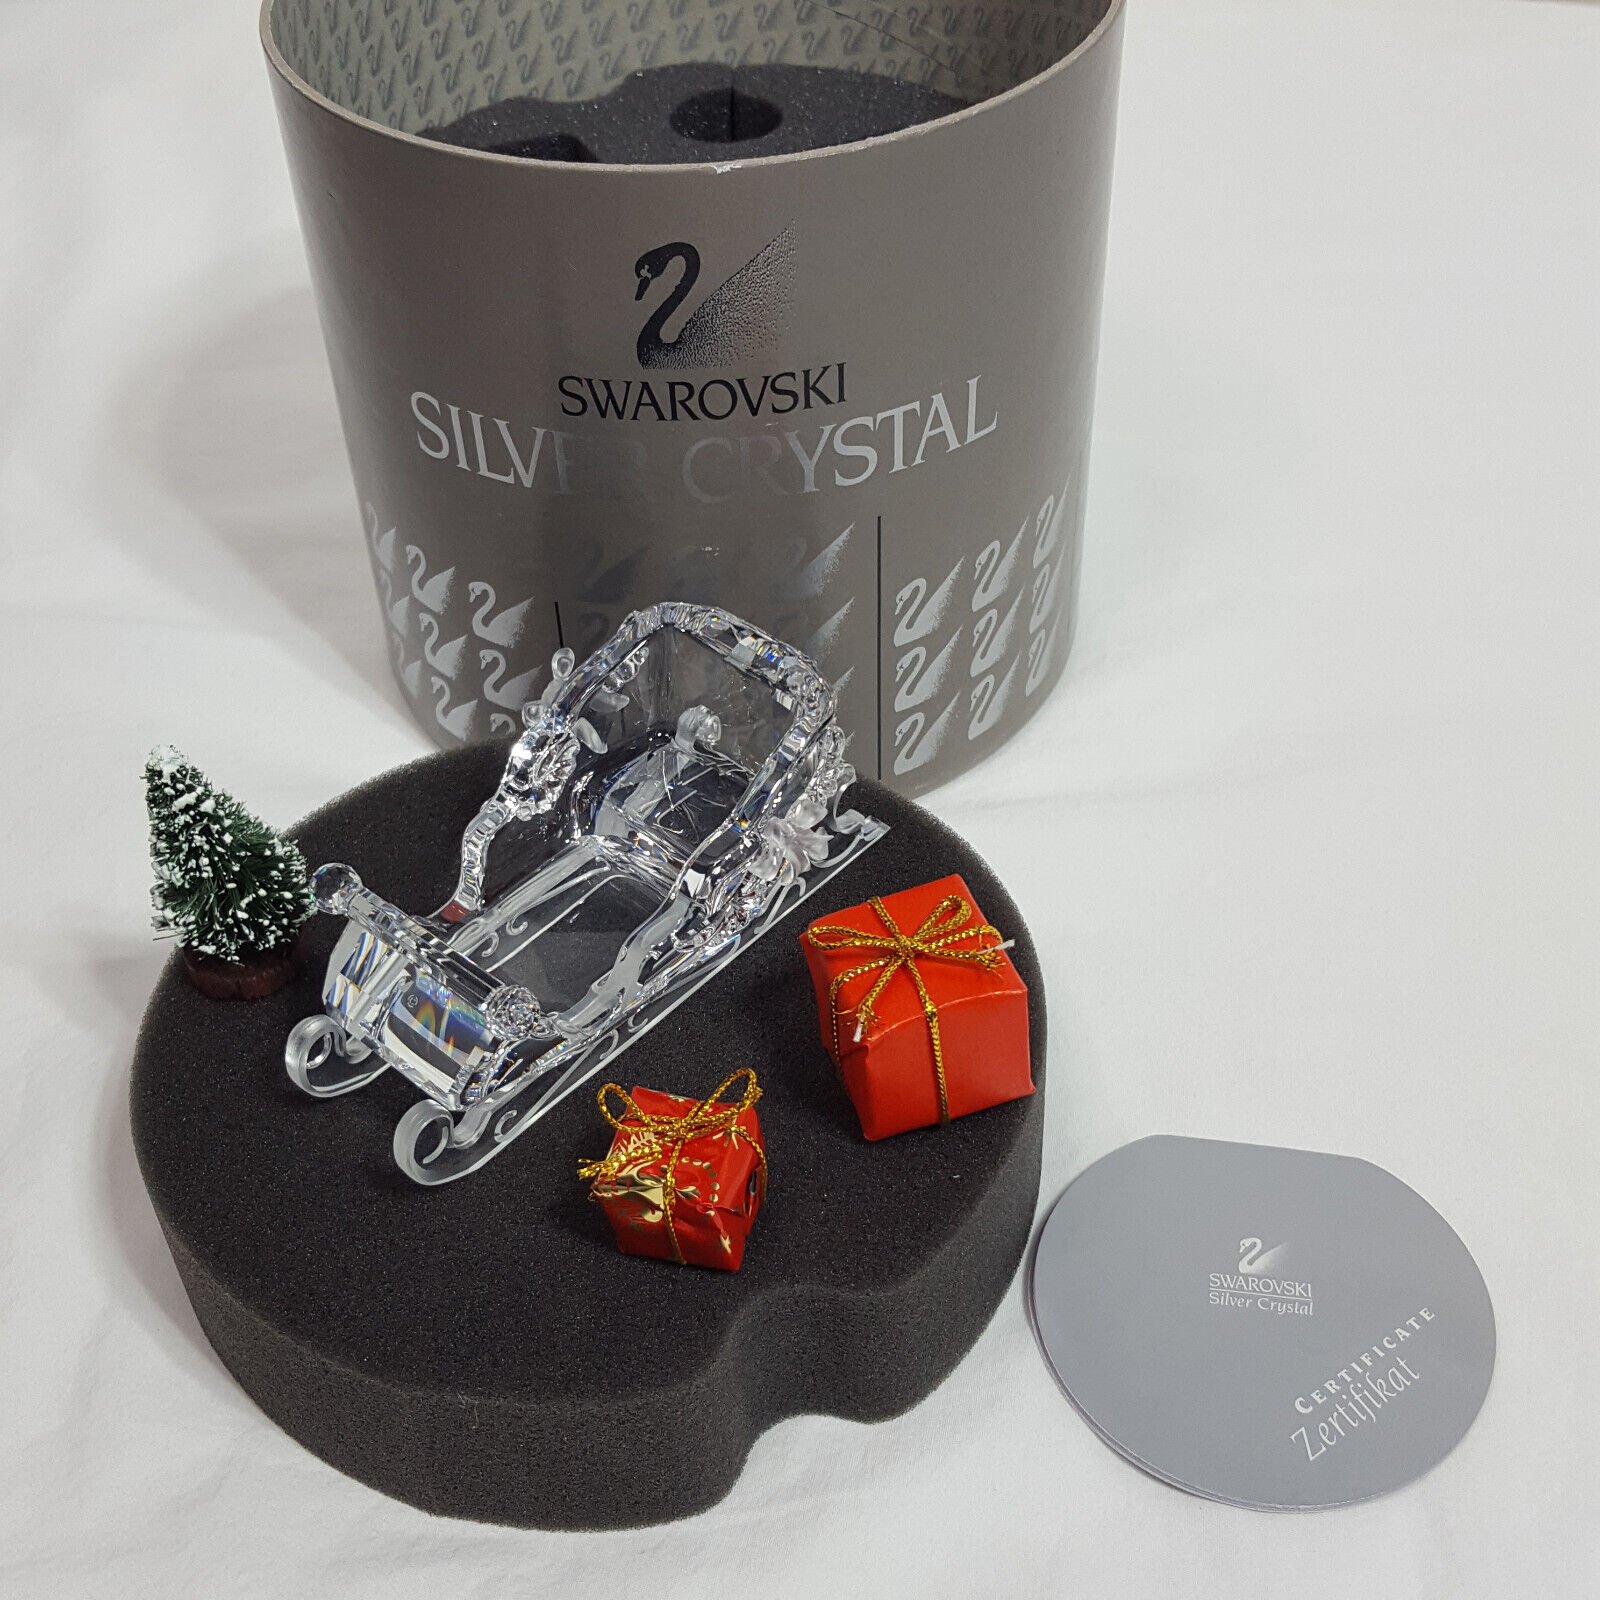 Swarovski Silver Crystal Christmas Santa Sleigh with Presents, tree & box 205165